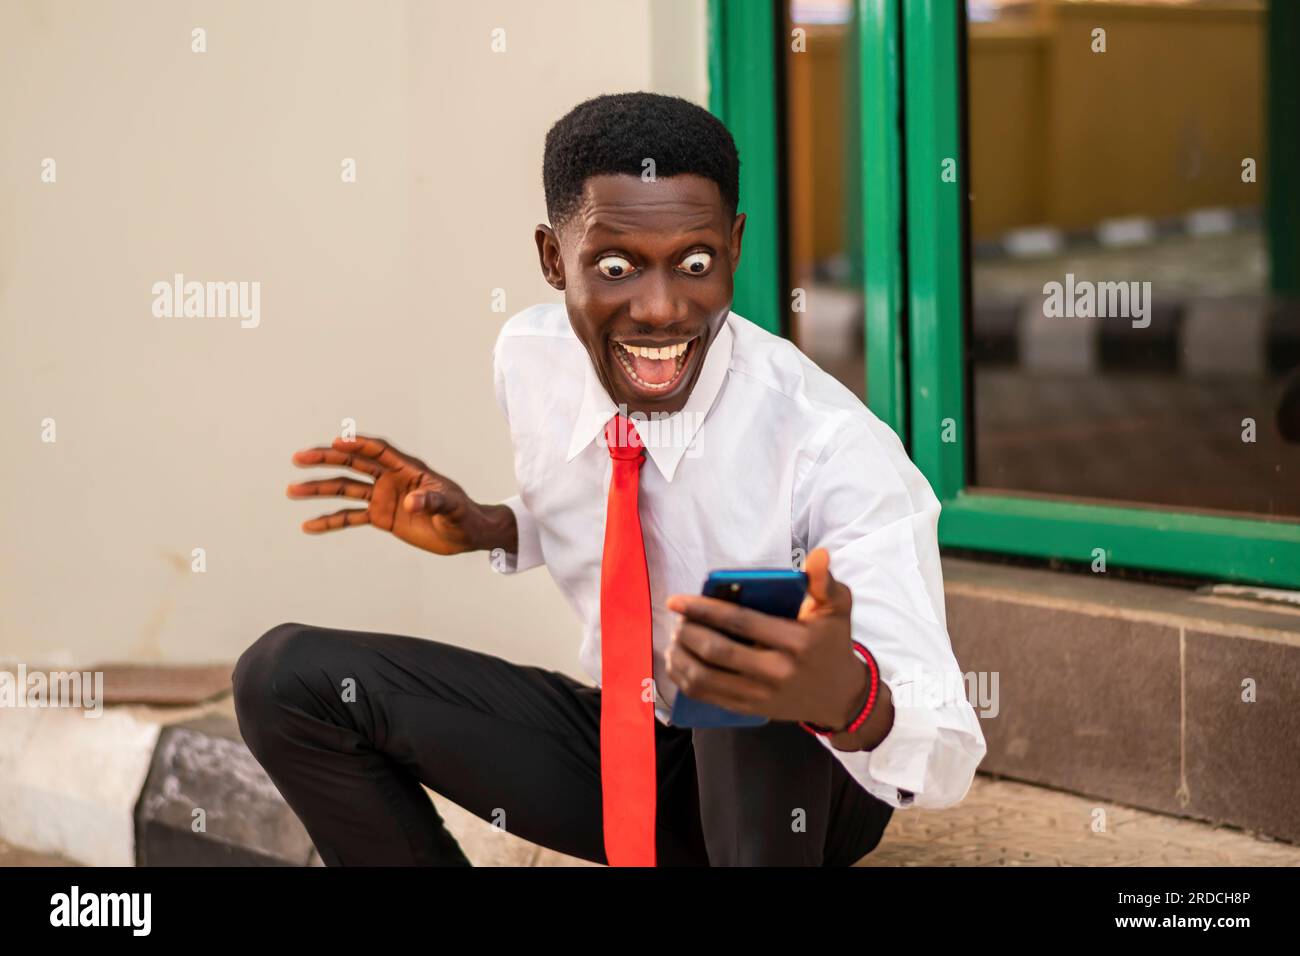 Foto eines jungen Afrikaners, der aufgeregt aussah, während er ein Handy in einem weißen Hemd und einer roten Krawatte hielt Stockfoto